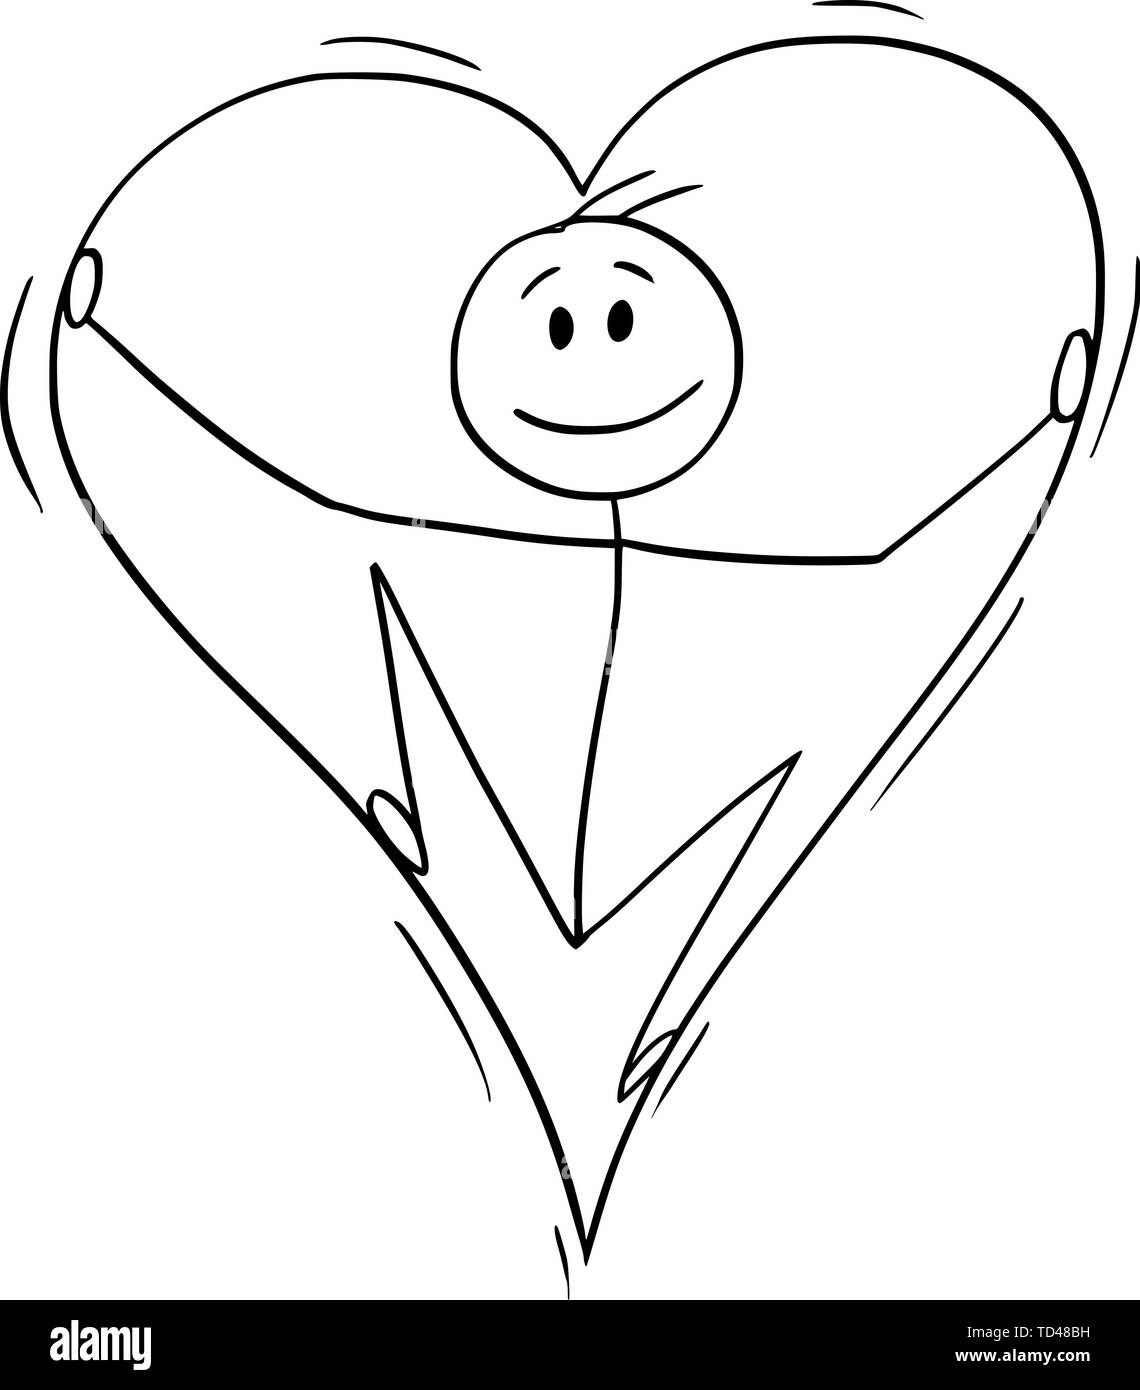 Vector cartoon stick figura disegno illustrazione concettuale dell'uomo nell'amore all'interno di un grande cuore. Illustrazione Vettoriale